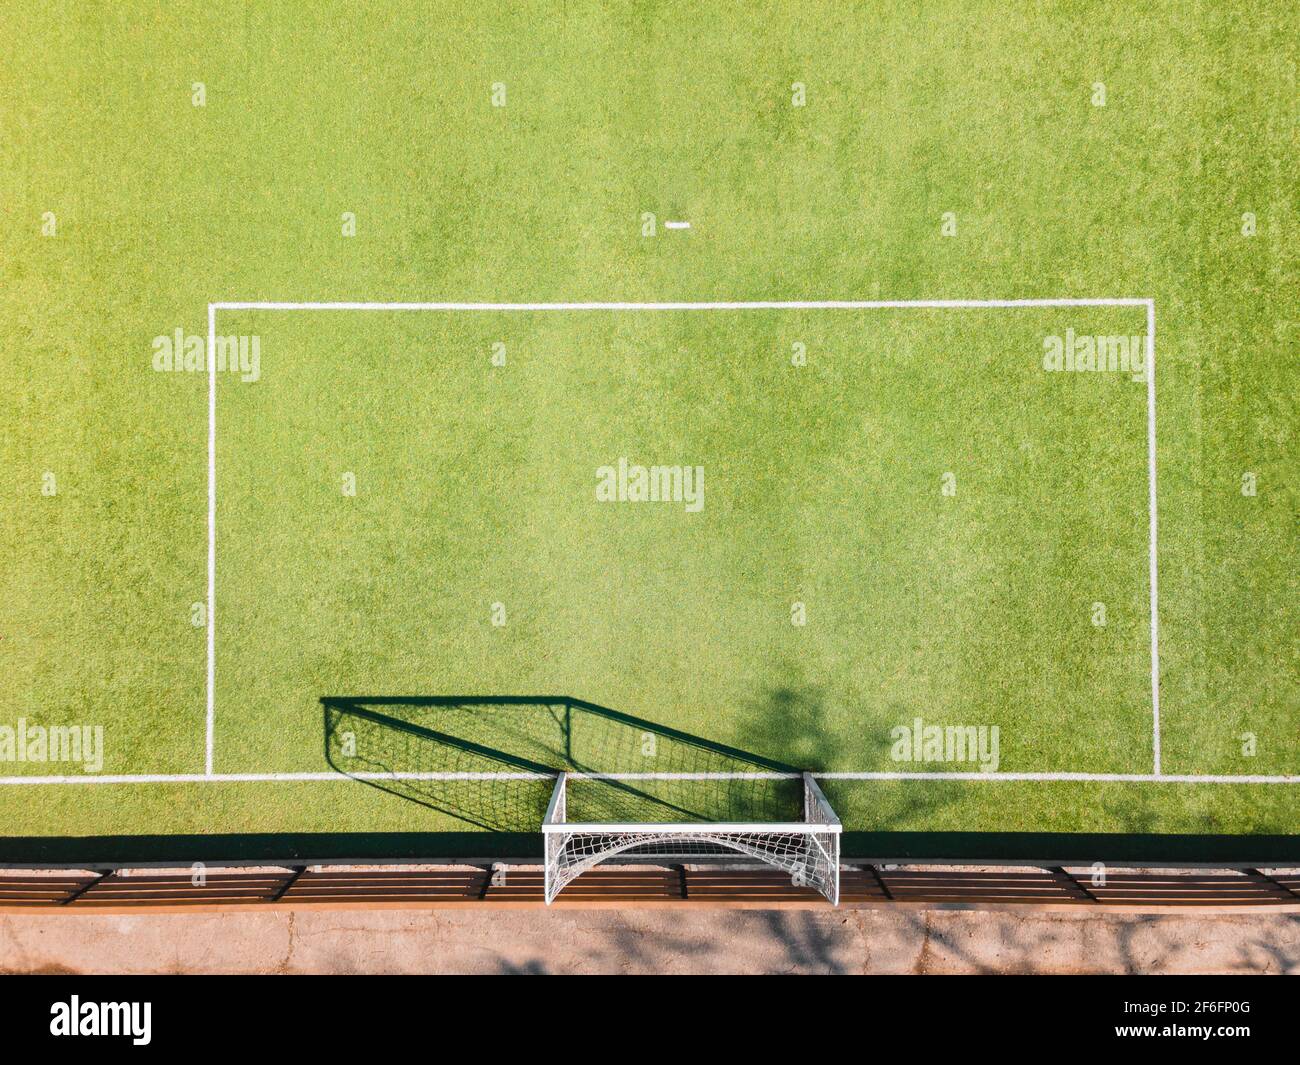 Dettagli del campo da calcio. Campo sportivo all'aperto con superficie verde per giocare a calcio o a calcio in zona urbana, dettaglio, vista drone Foto Stock